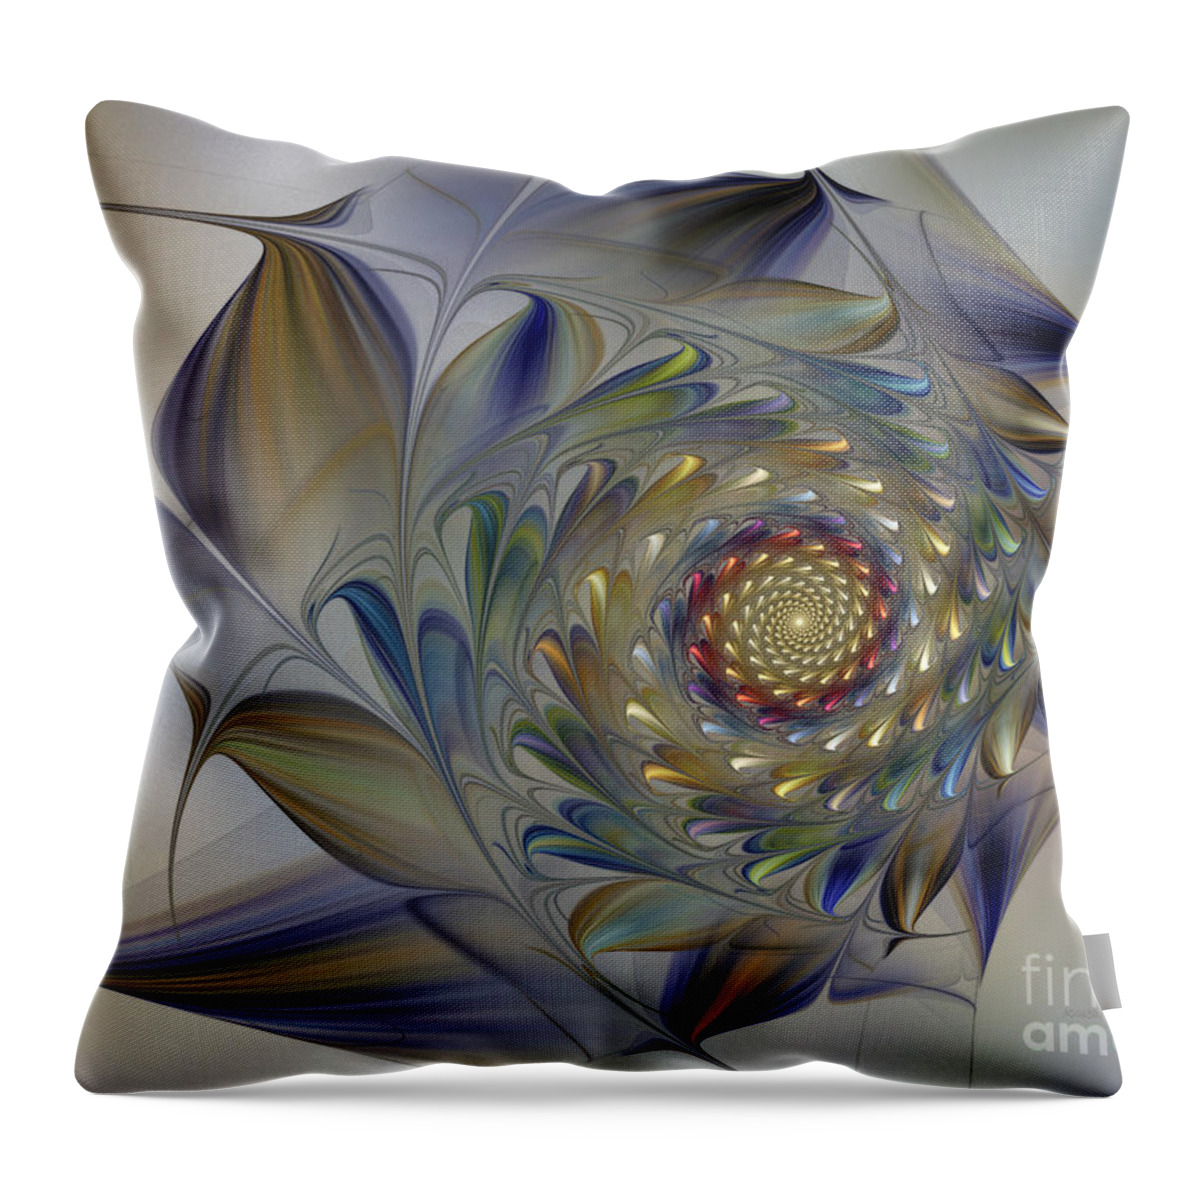 Fractal Throw Pillow featuring the digital art Tender Flowers Dream-Fractal Art by Karin Kuhlmann